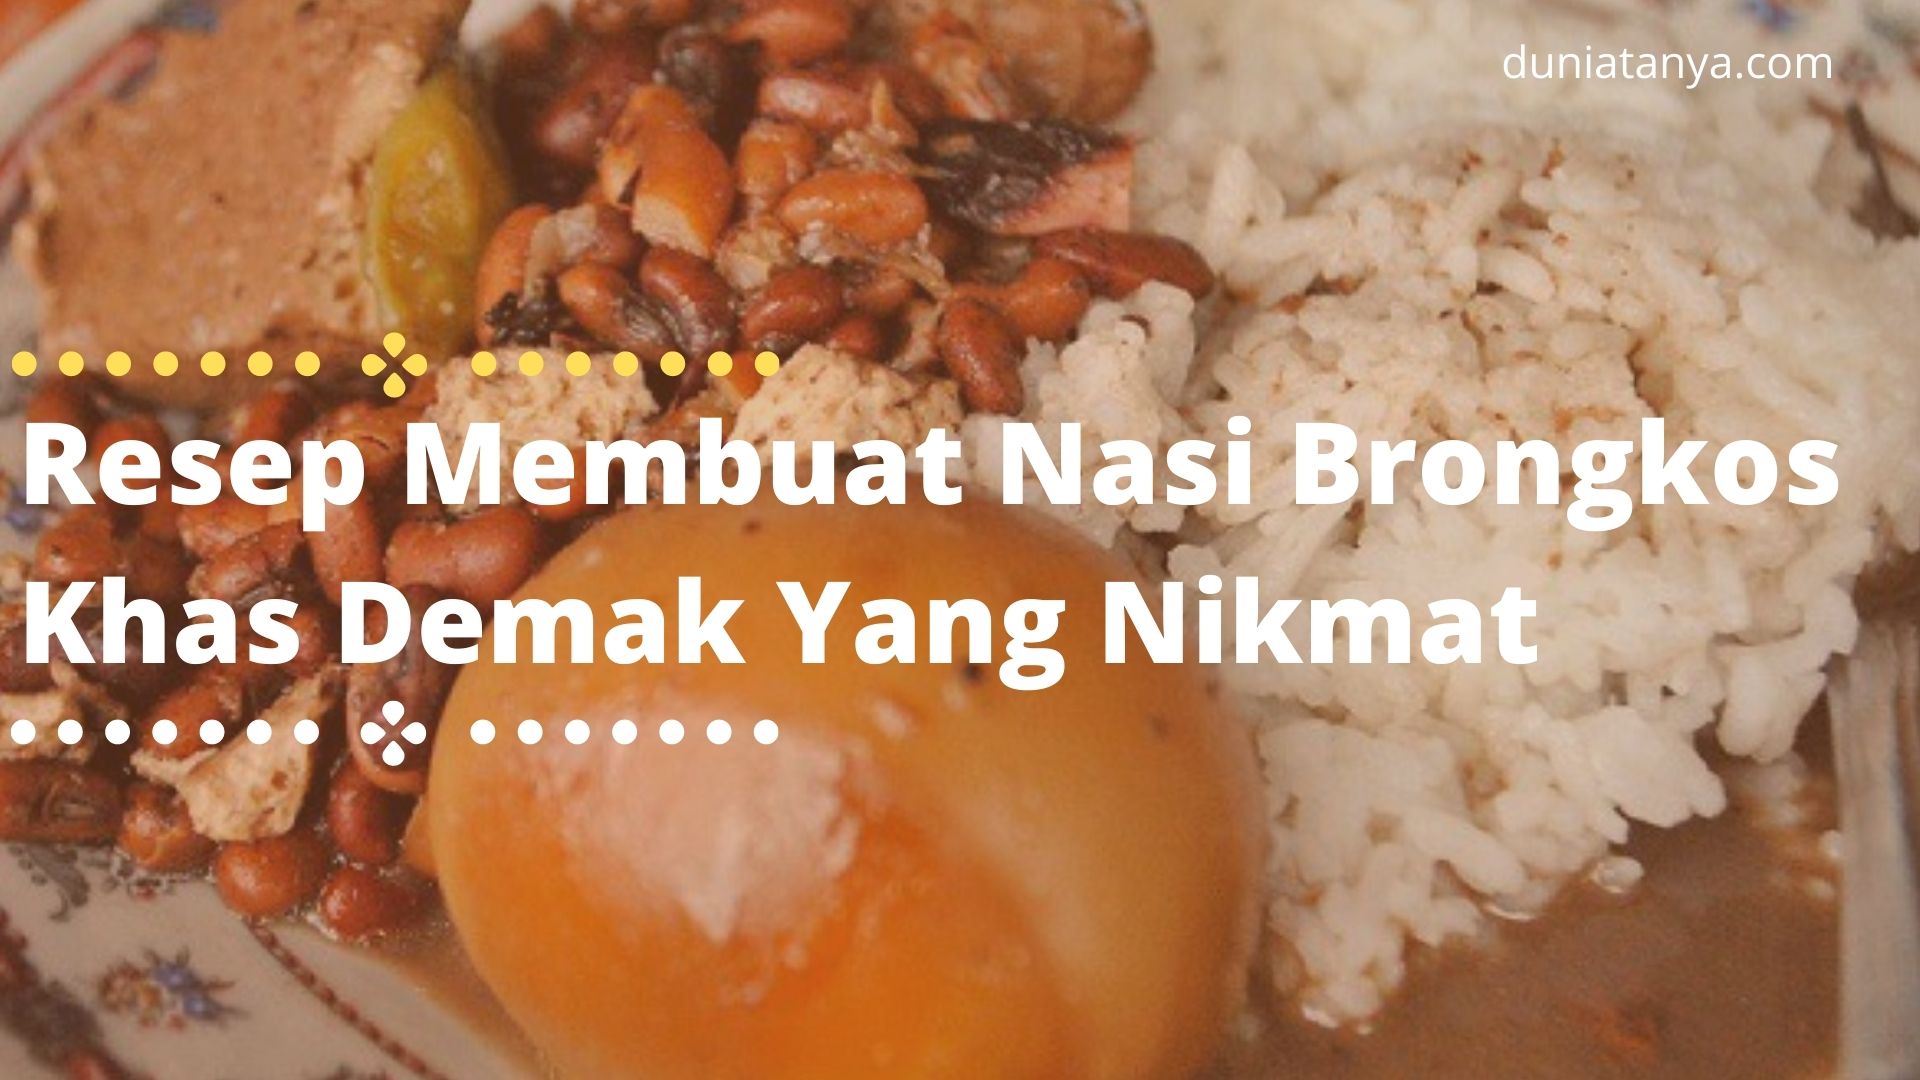 You are currently viewing Resep Membuat Nasi Brongkos Khas Demak Yang Nikmat